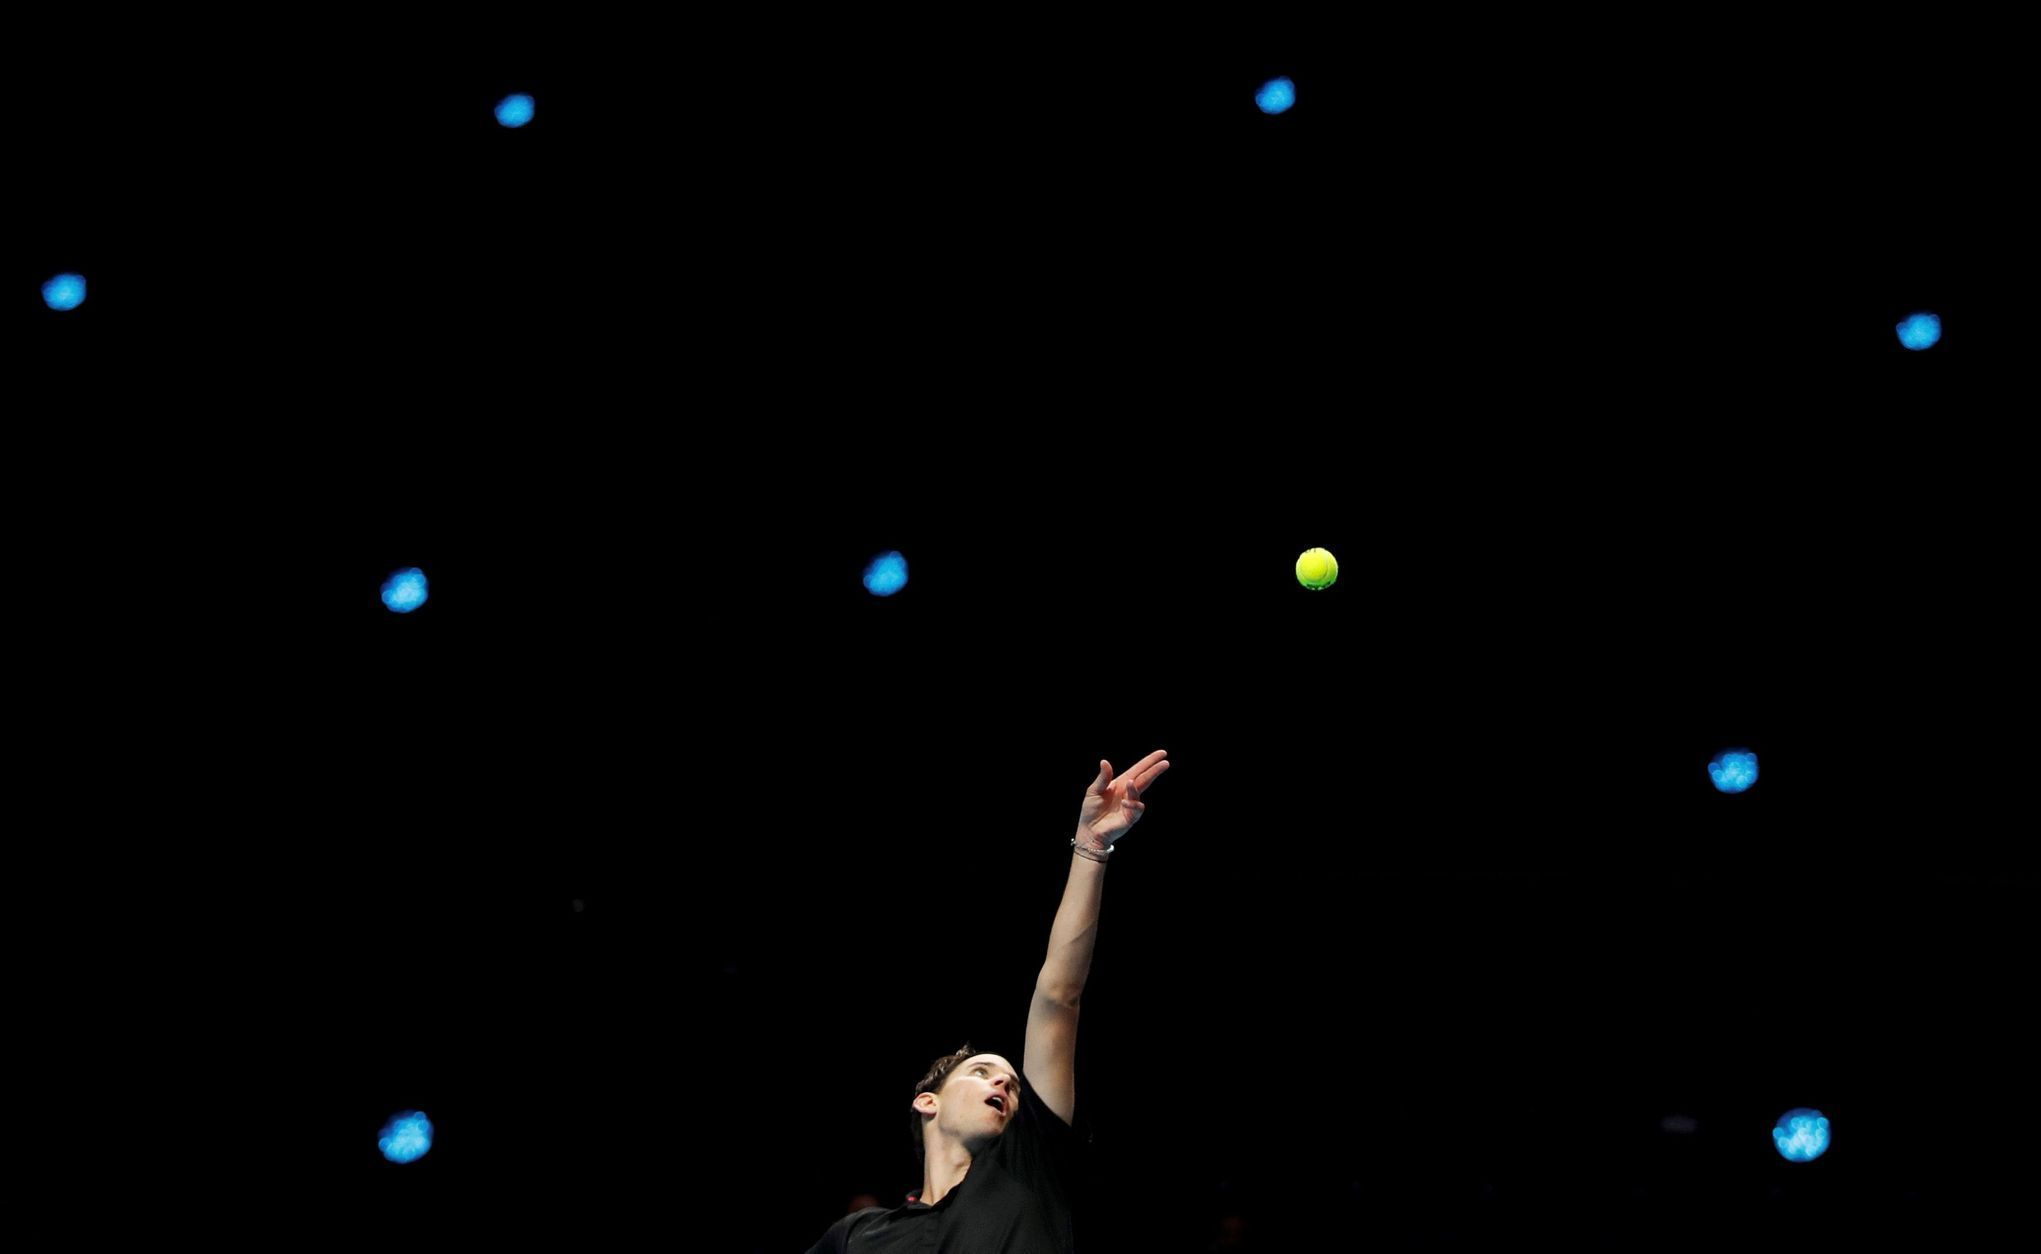 Nejhezčí fotky Reuters 2020 - Dominic Thiem podává v zápase Turnaje mistrů v Londýně